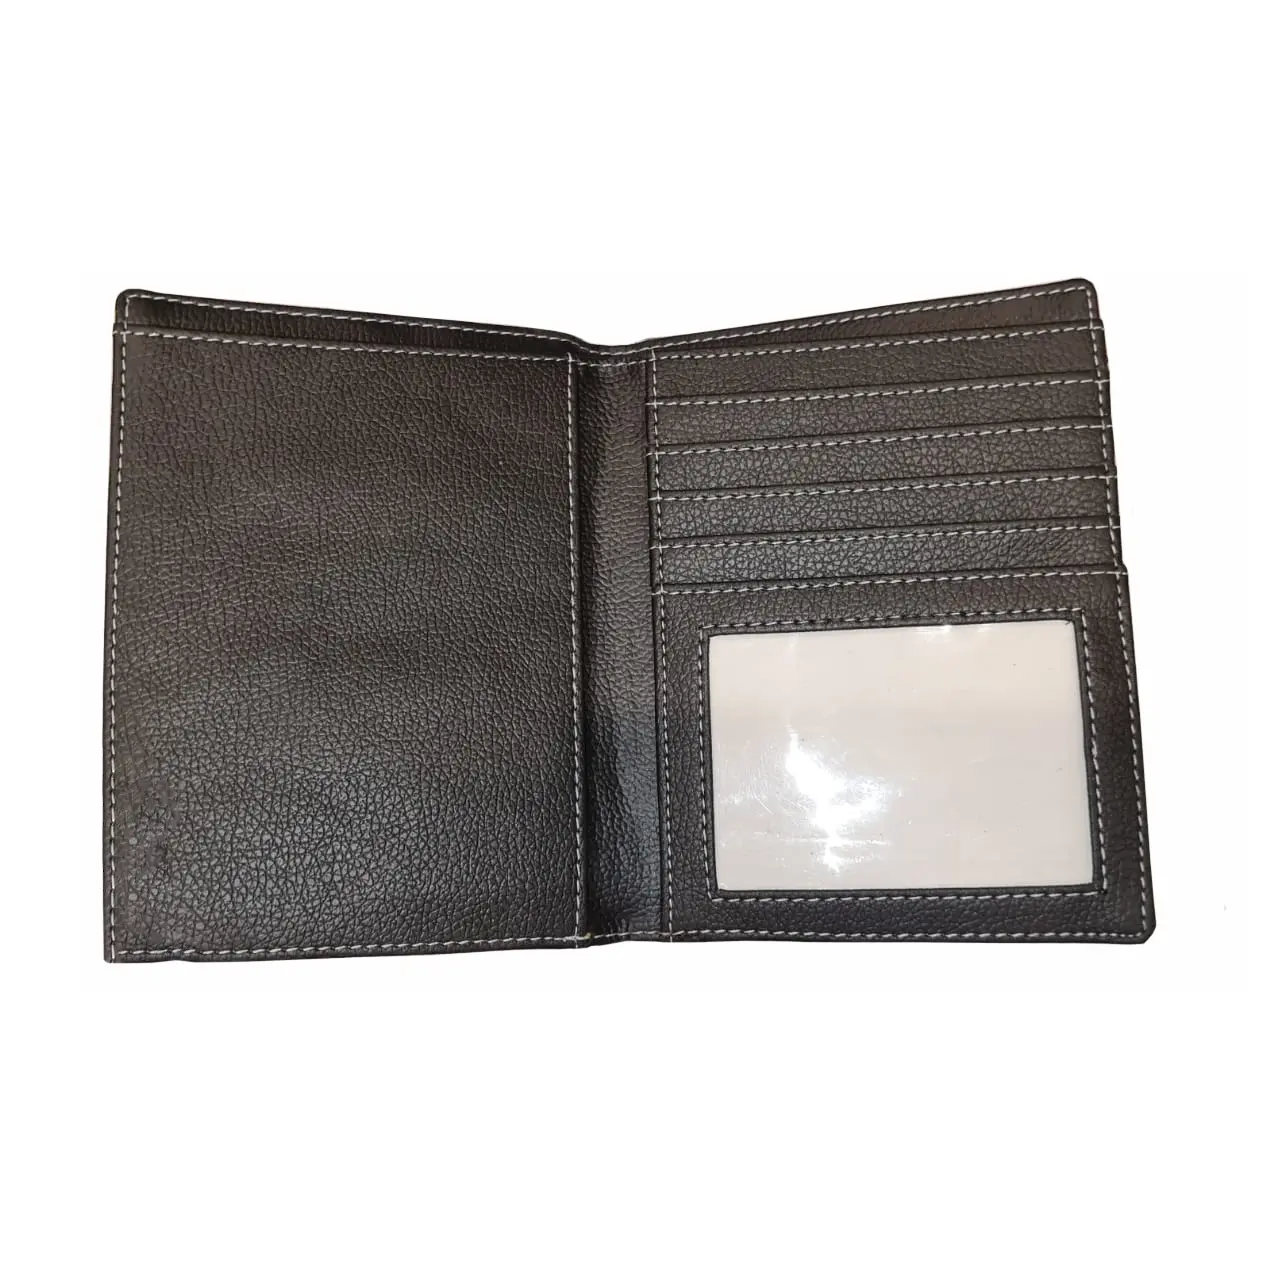 A carteira do dobrador do passaporte do curso com personaliza o suporte genuíno da tampa do passaporte do couro do logotipo com proteção do RFID